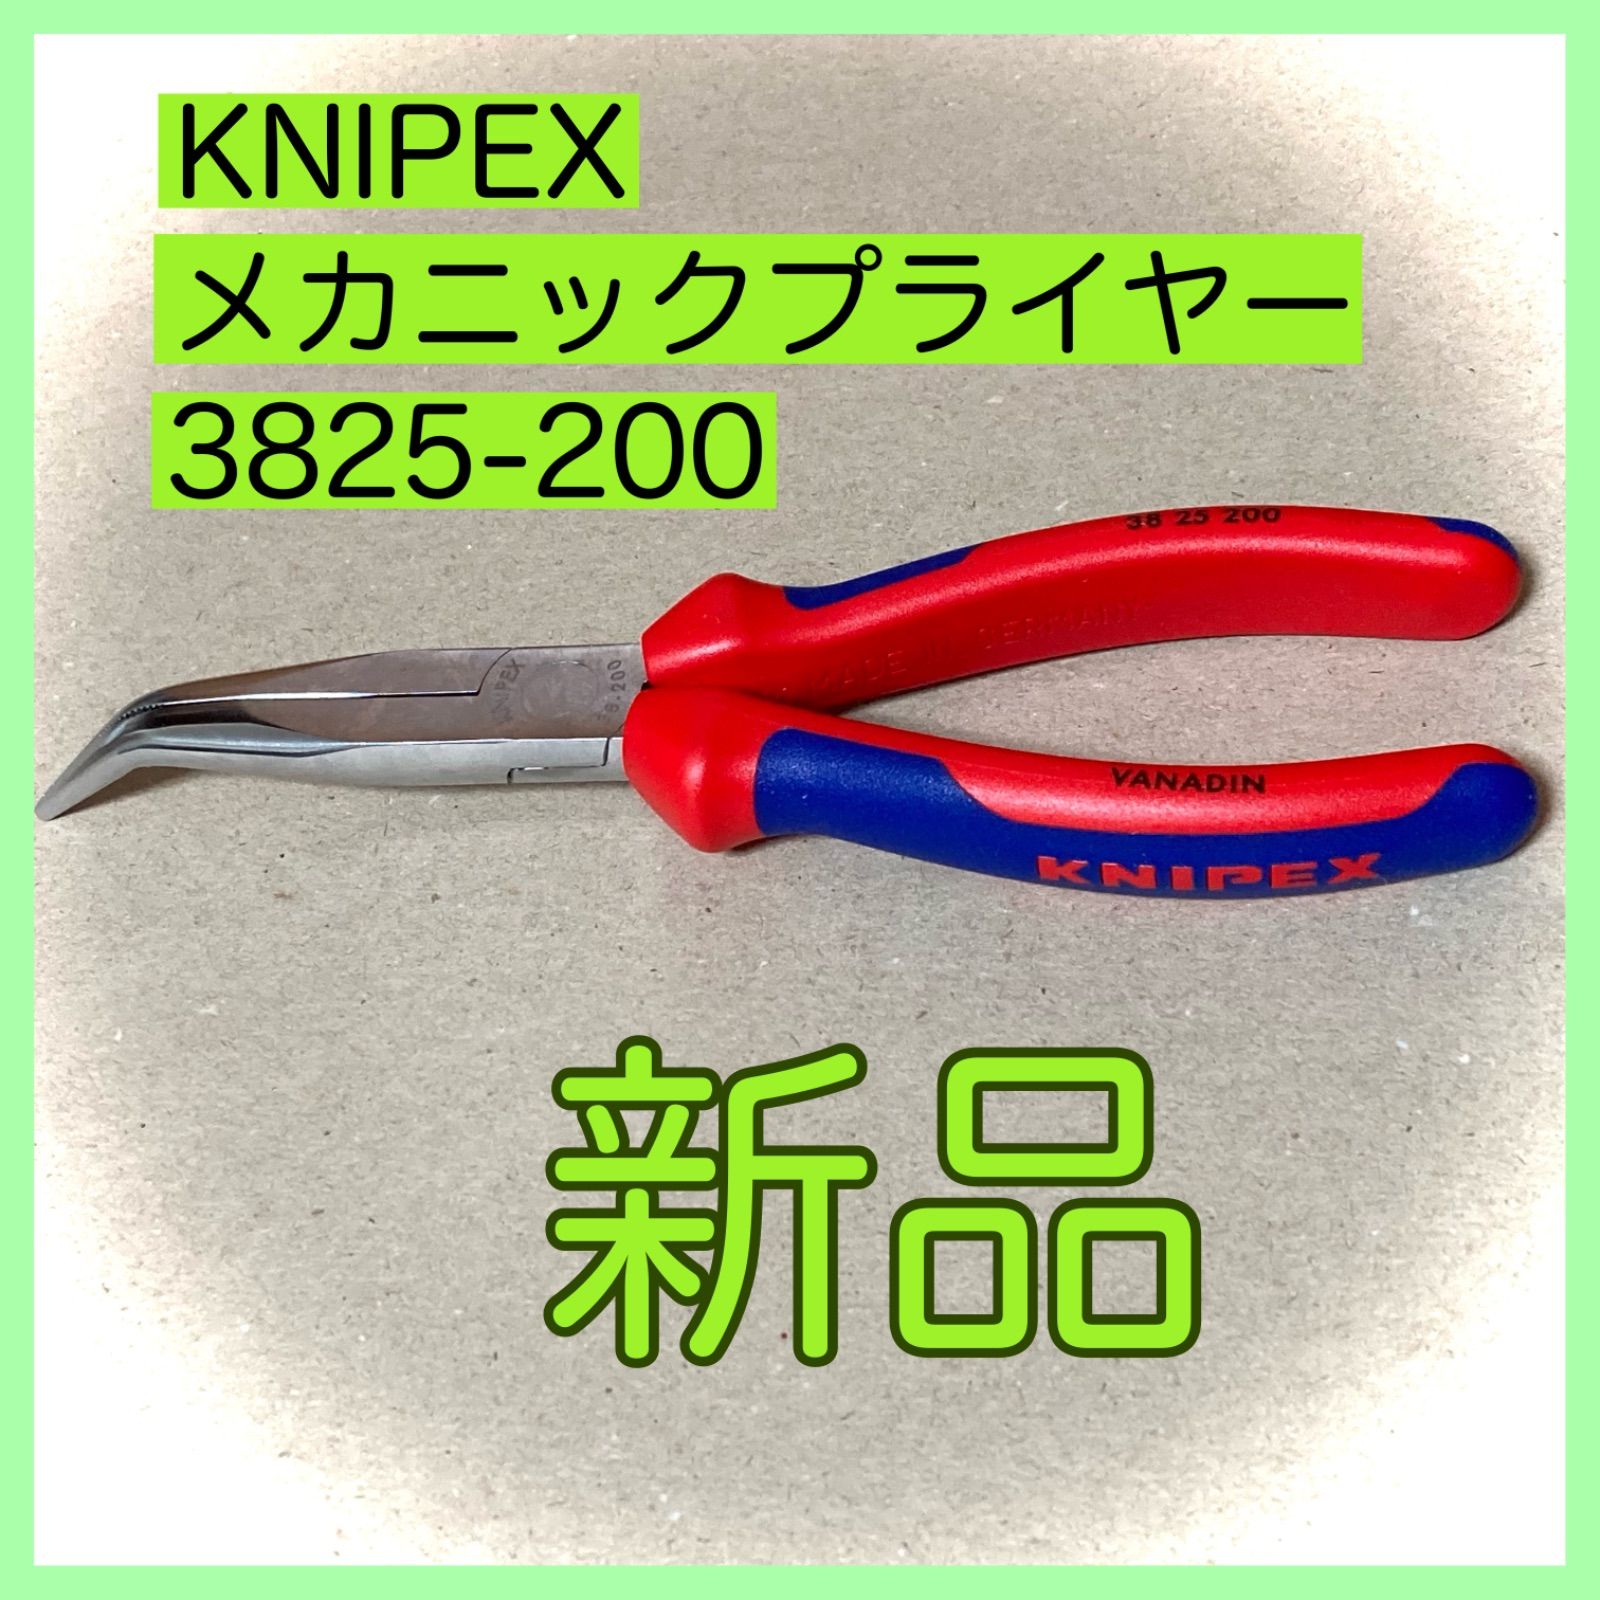 クニペックス (KNIPEX) ペンチ KNIPEX 9778-180TBK 絶縁圧着ペンチ